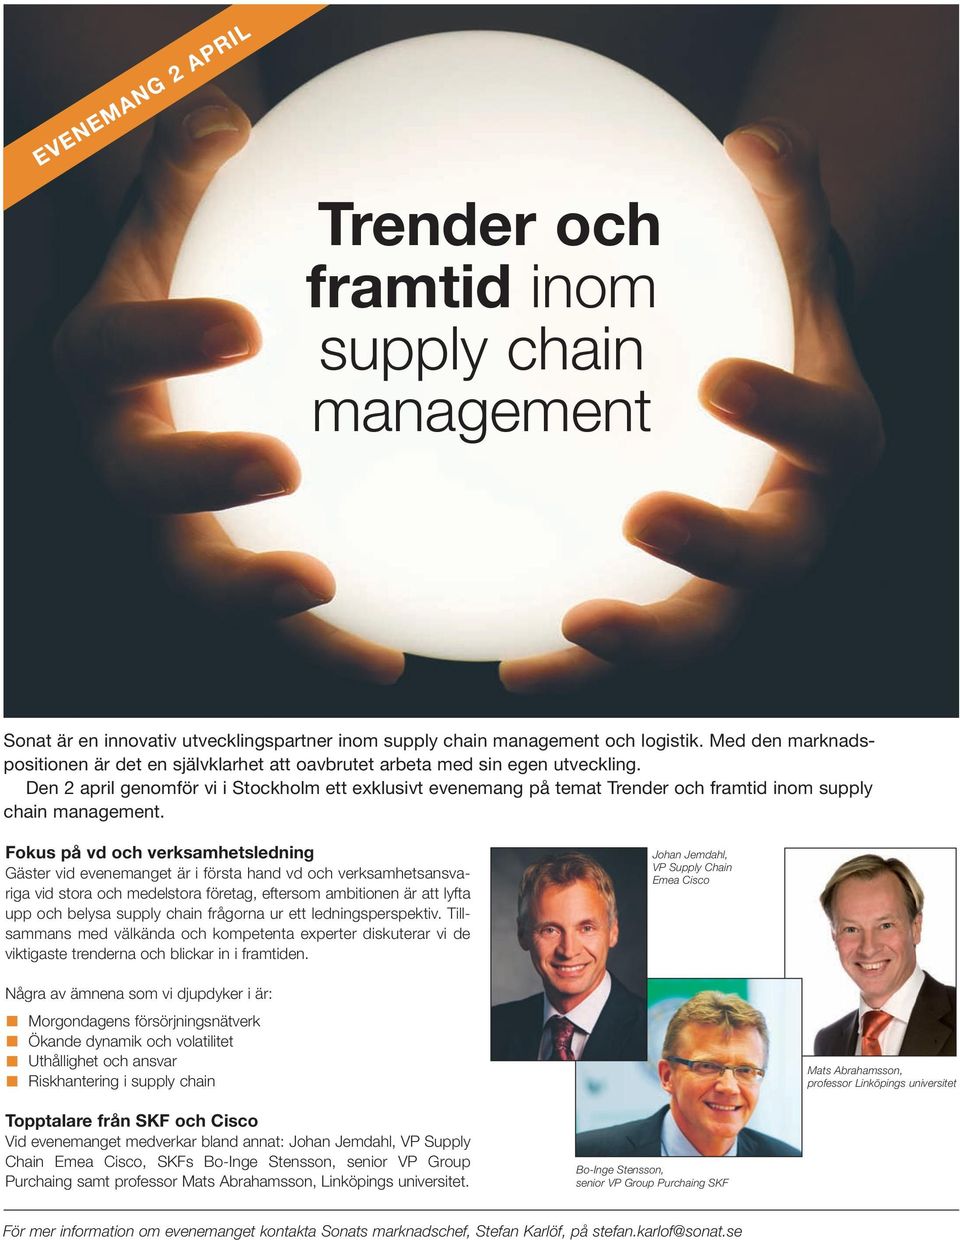 Den 2 april genomför vi i Stockholm ett exklusivt evenemang på temat Trender och framtid inom supply chain management.